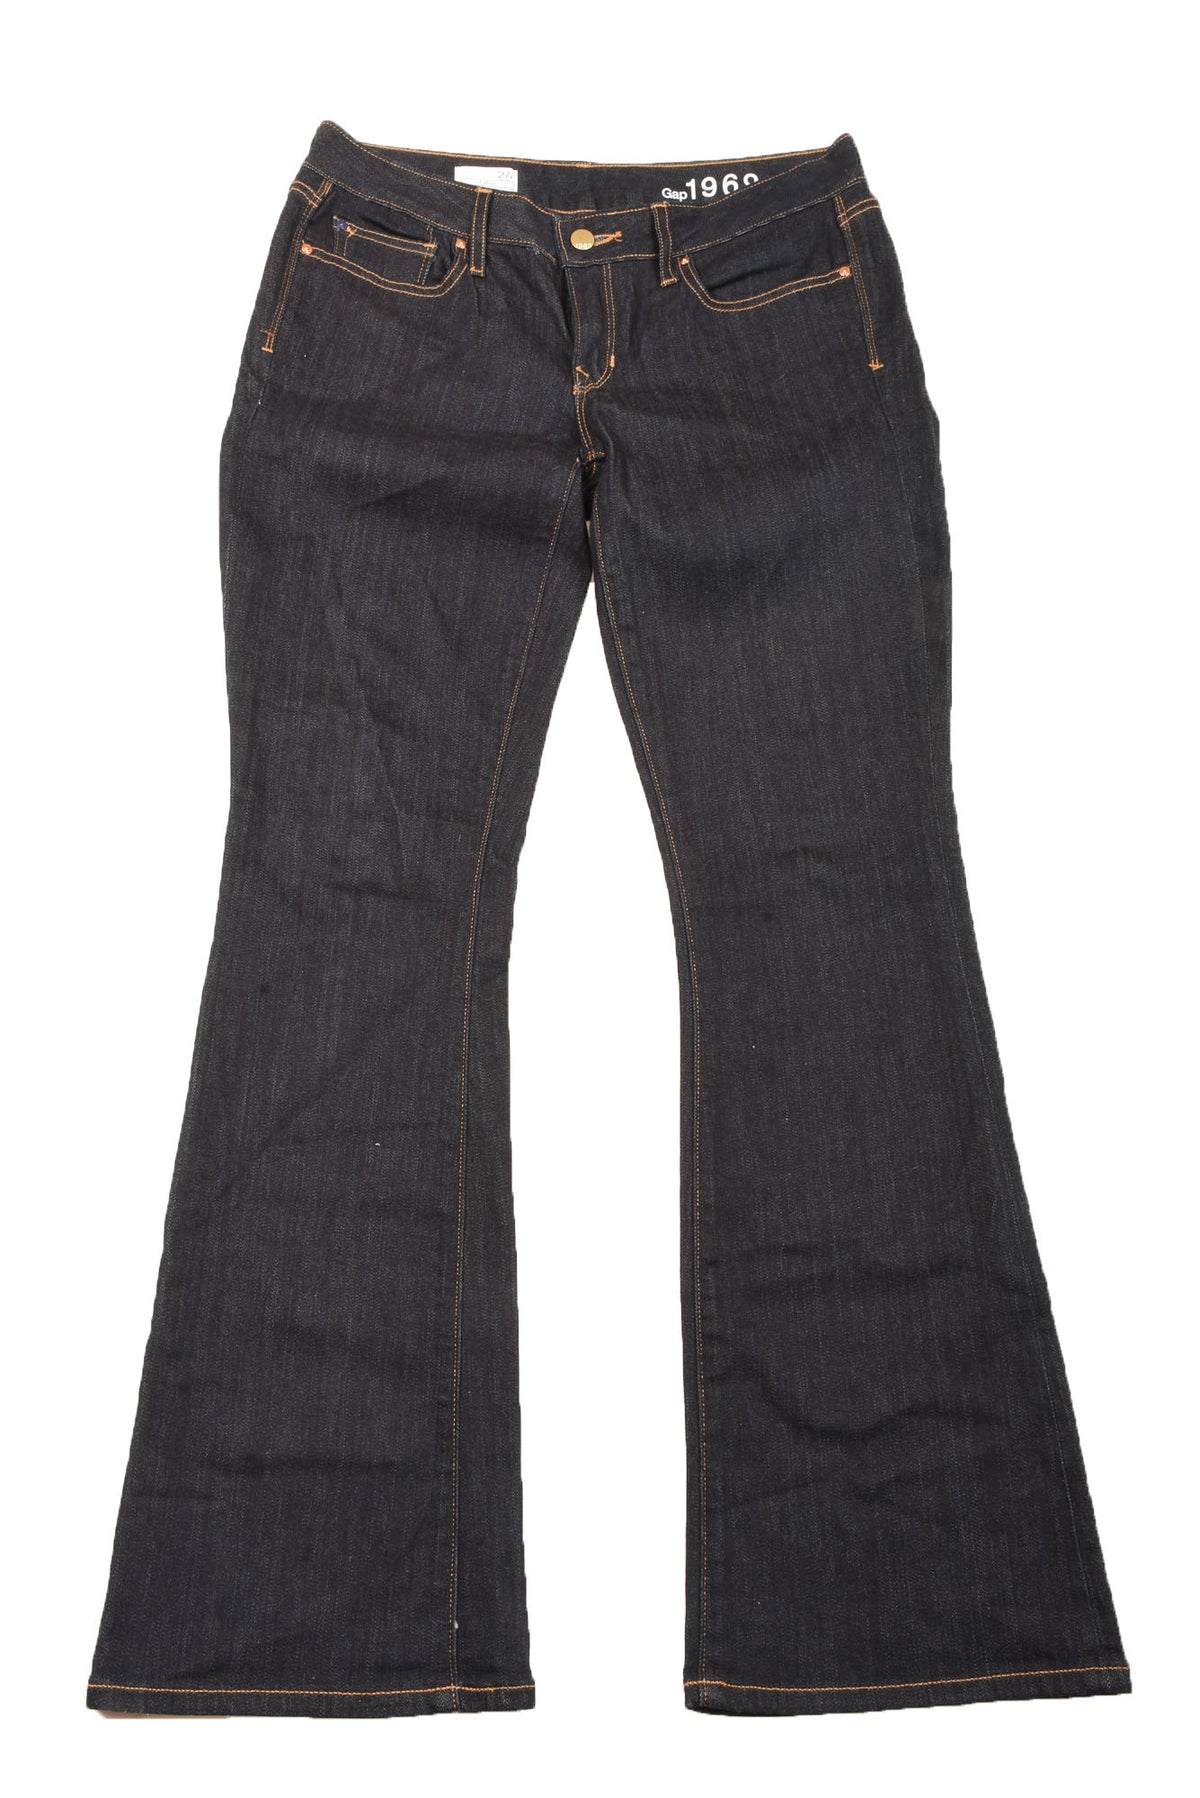 Gap Size 27 Women&#39;s Jeans